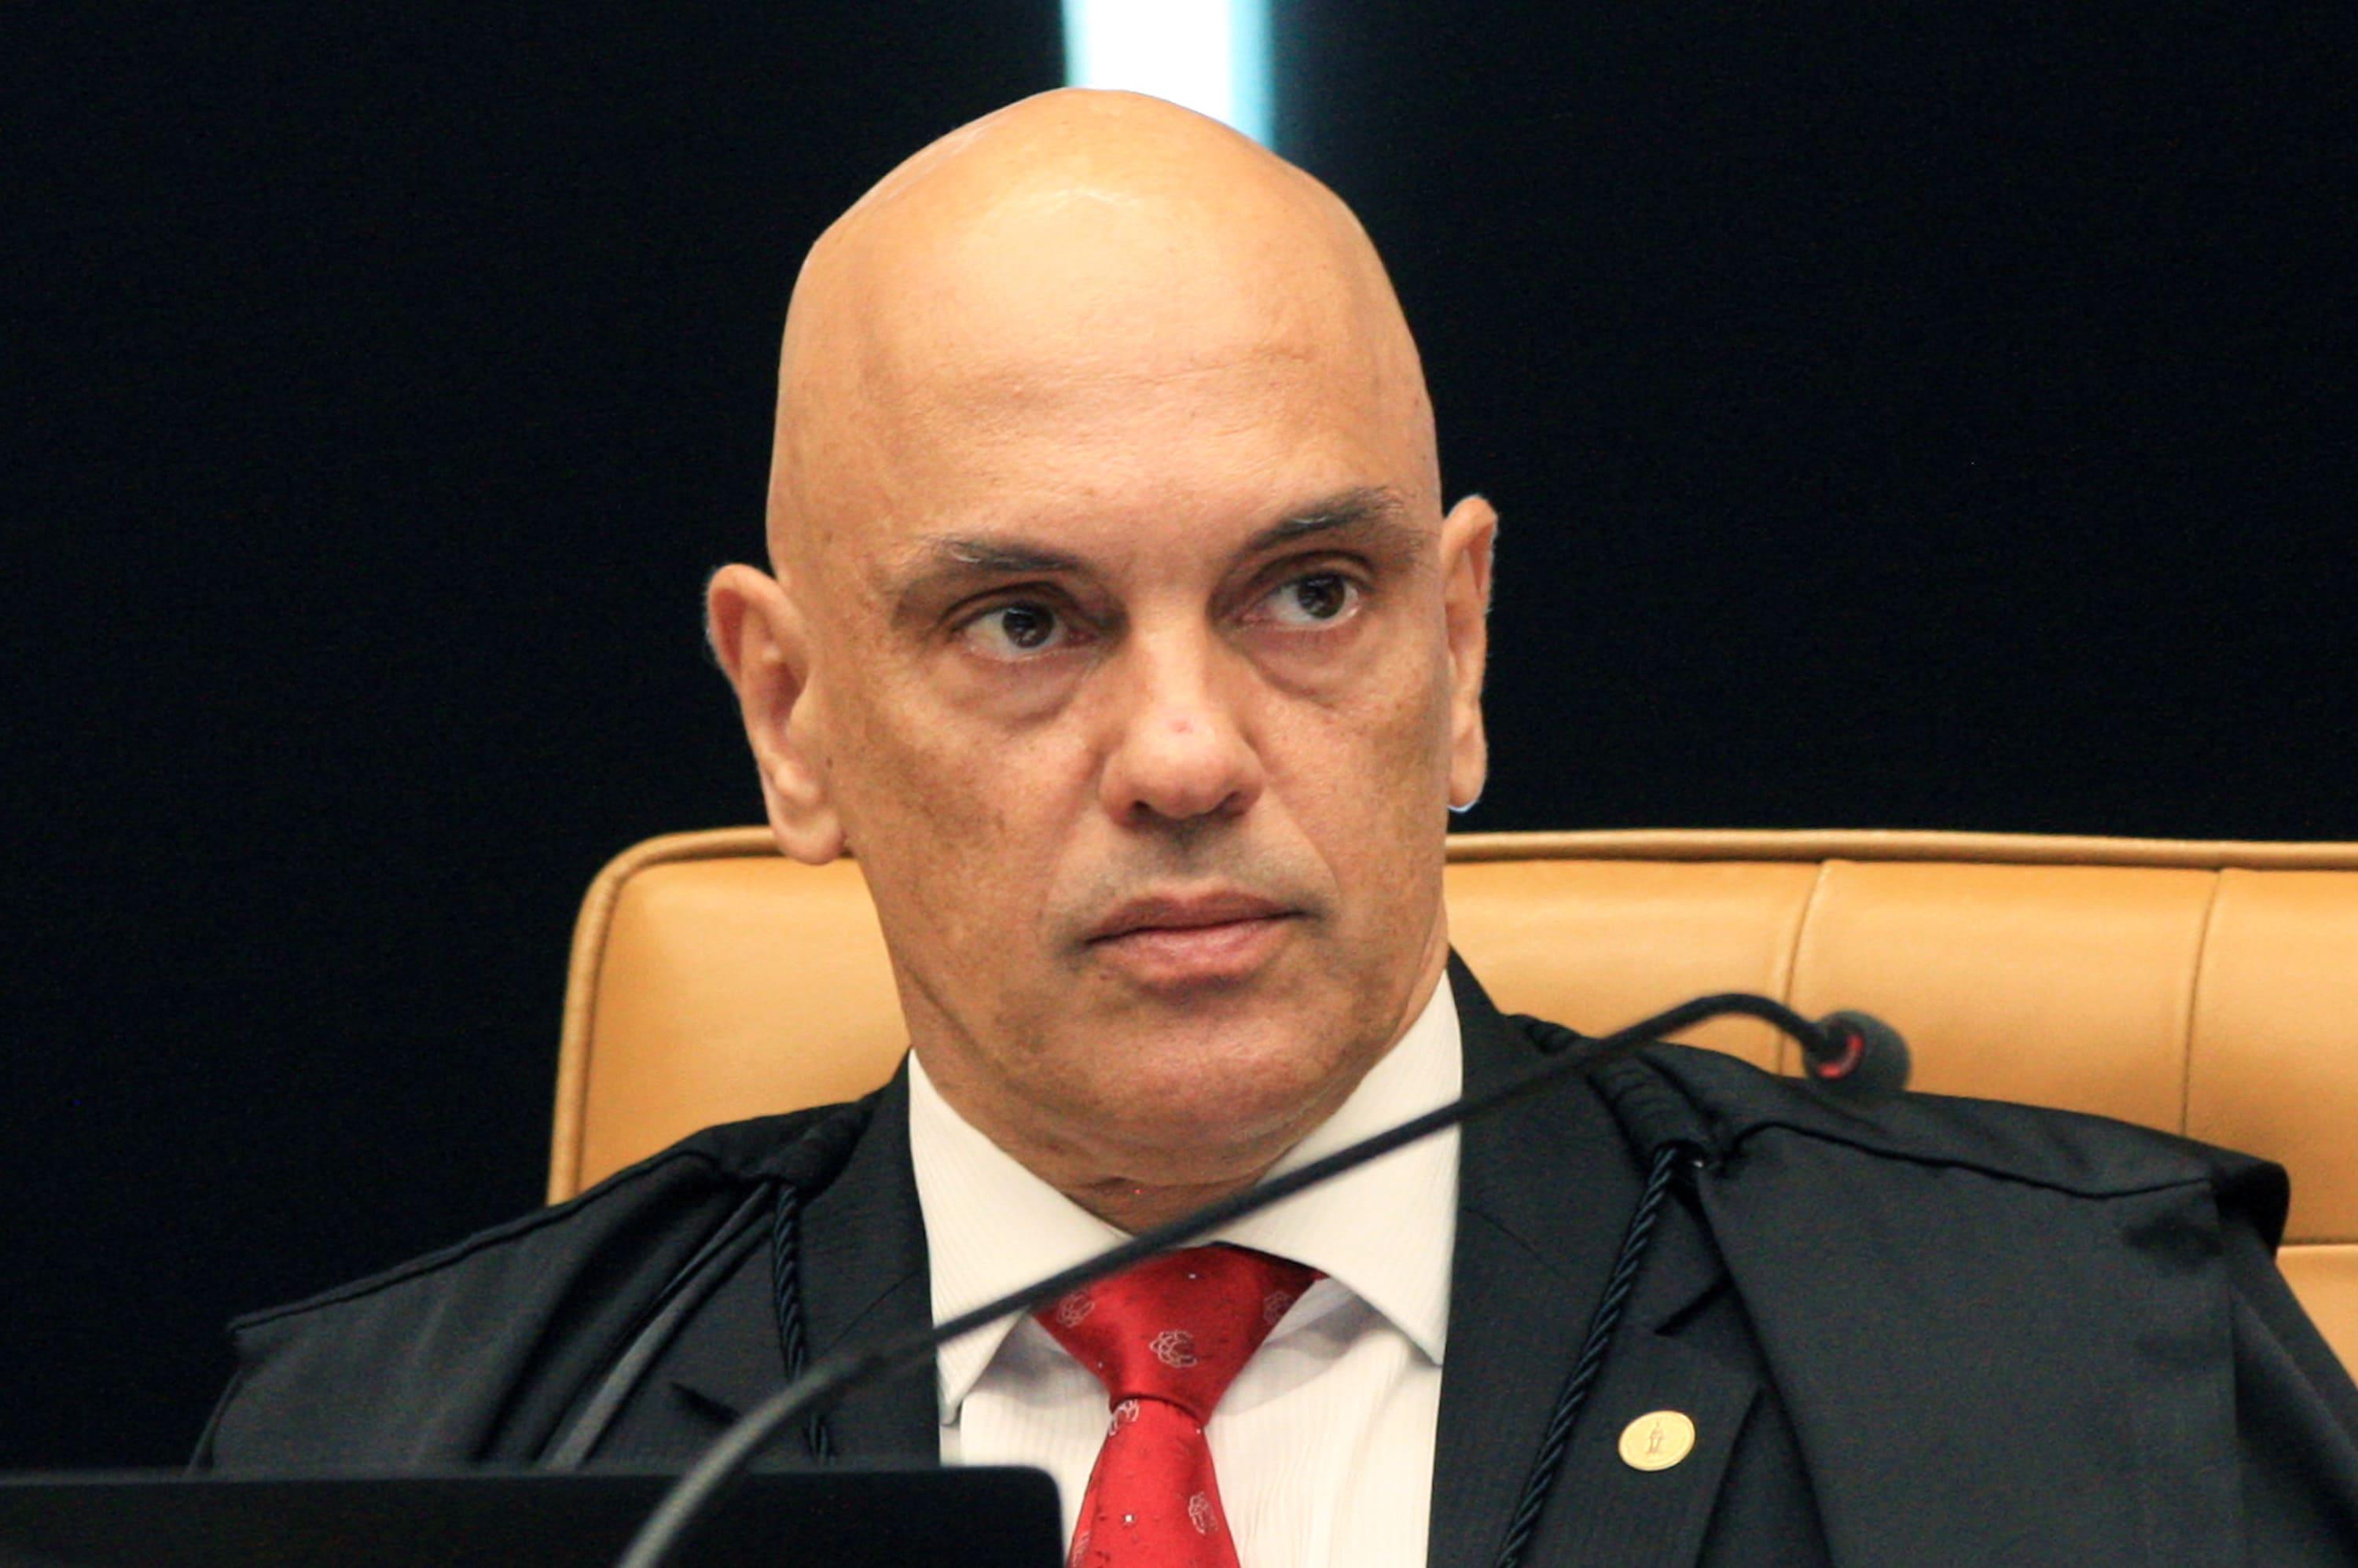 O ministro Alexandre de Moraes é um homem branco e careca. Ele veste terno preto e gravata vermelha. Sua expressão é séria.